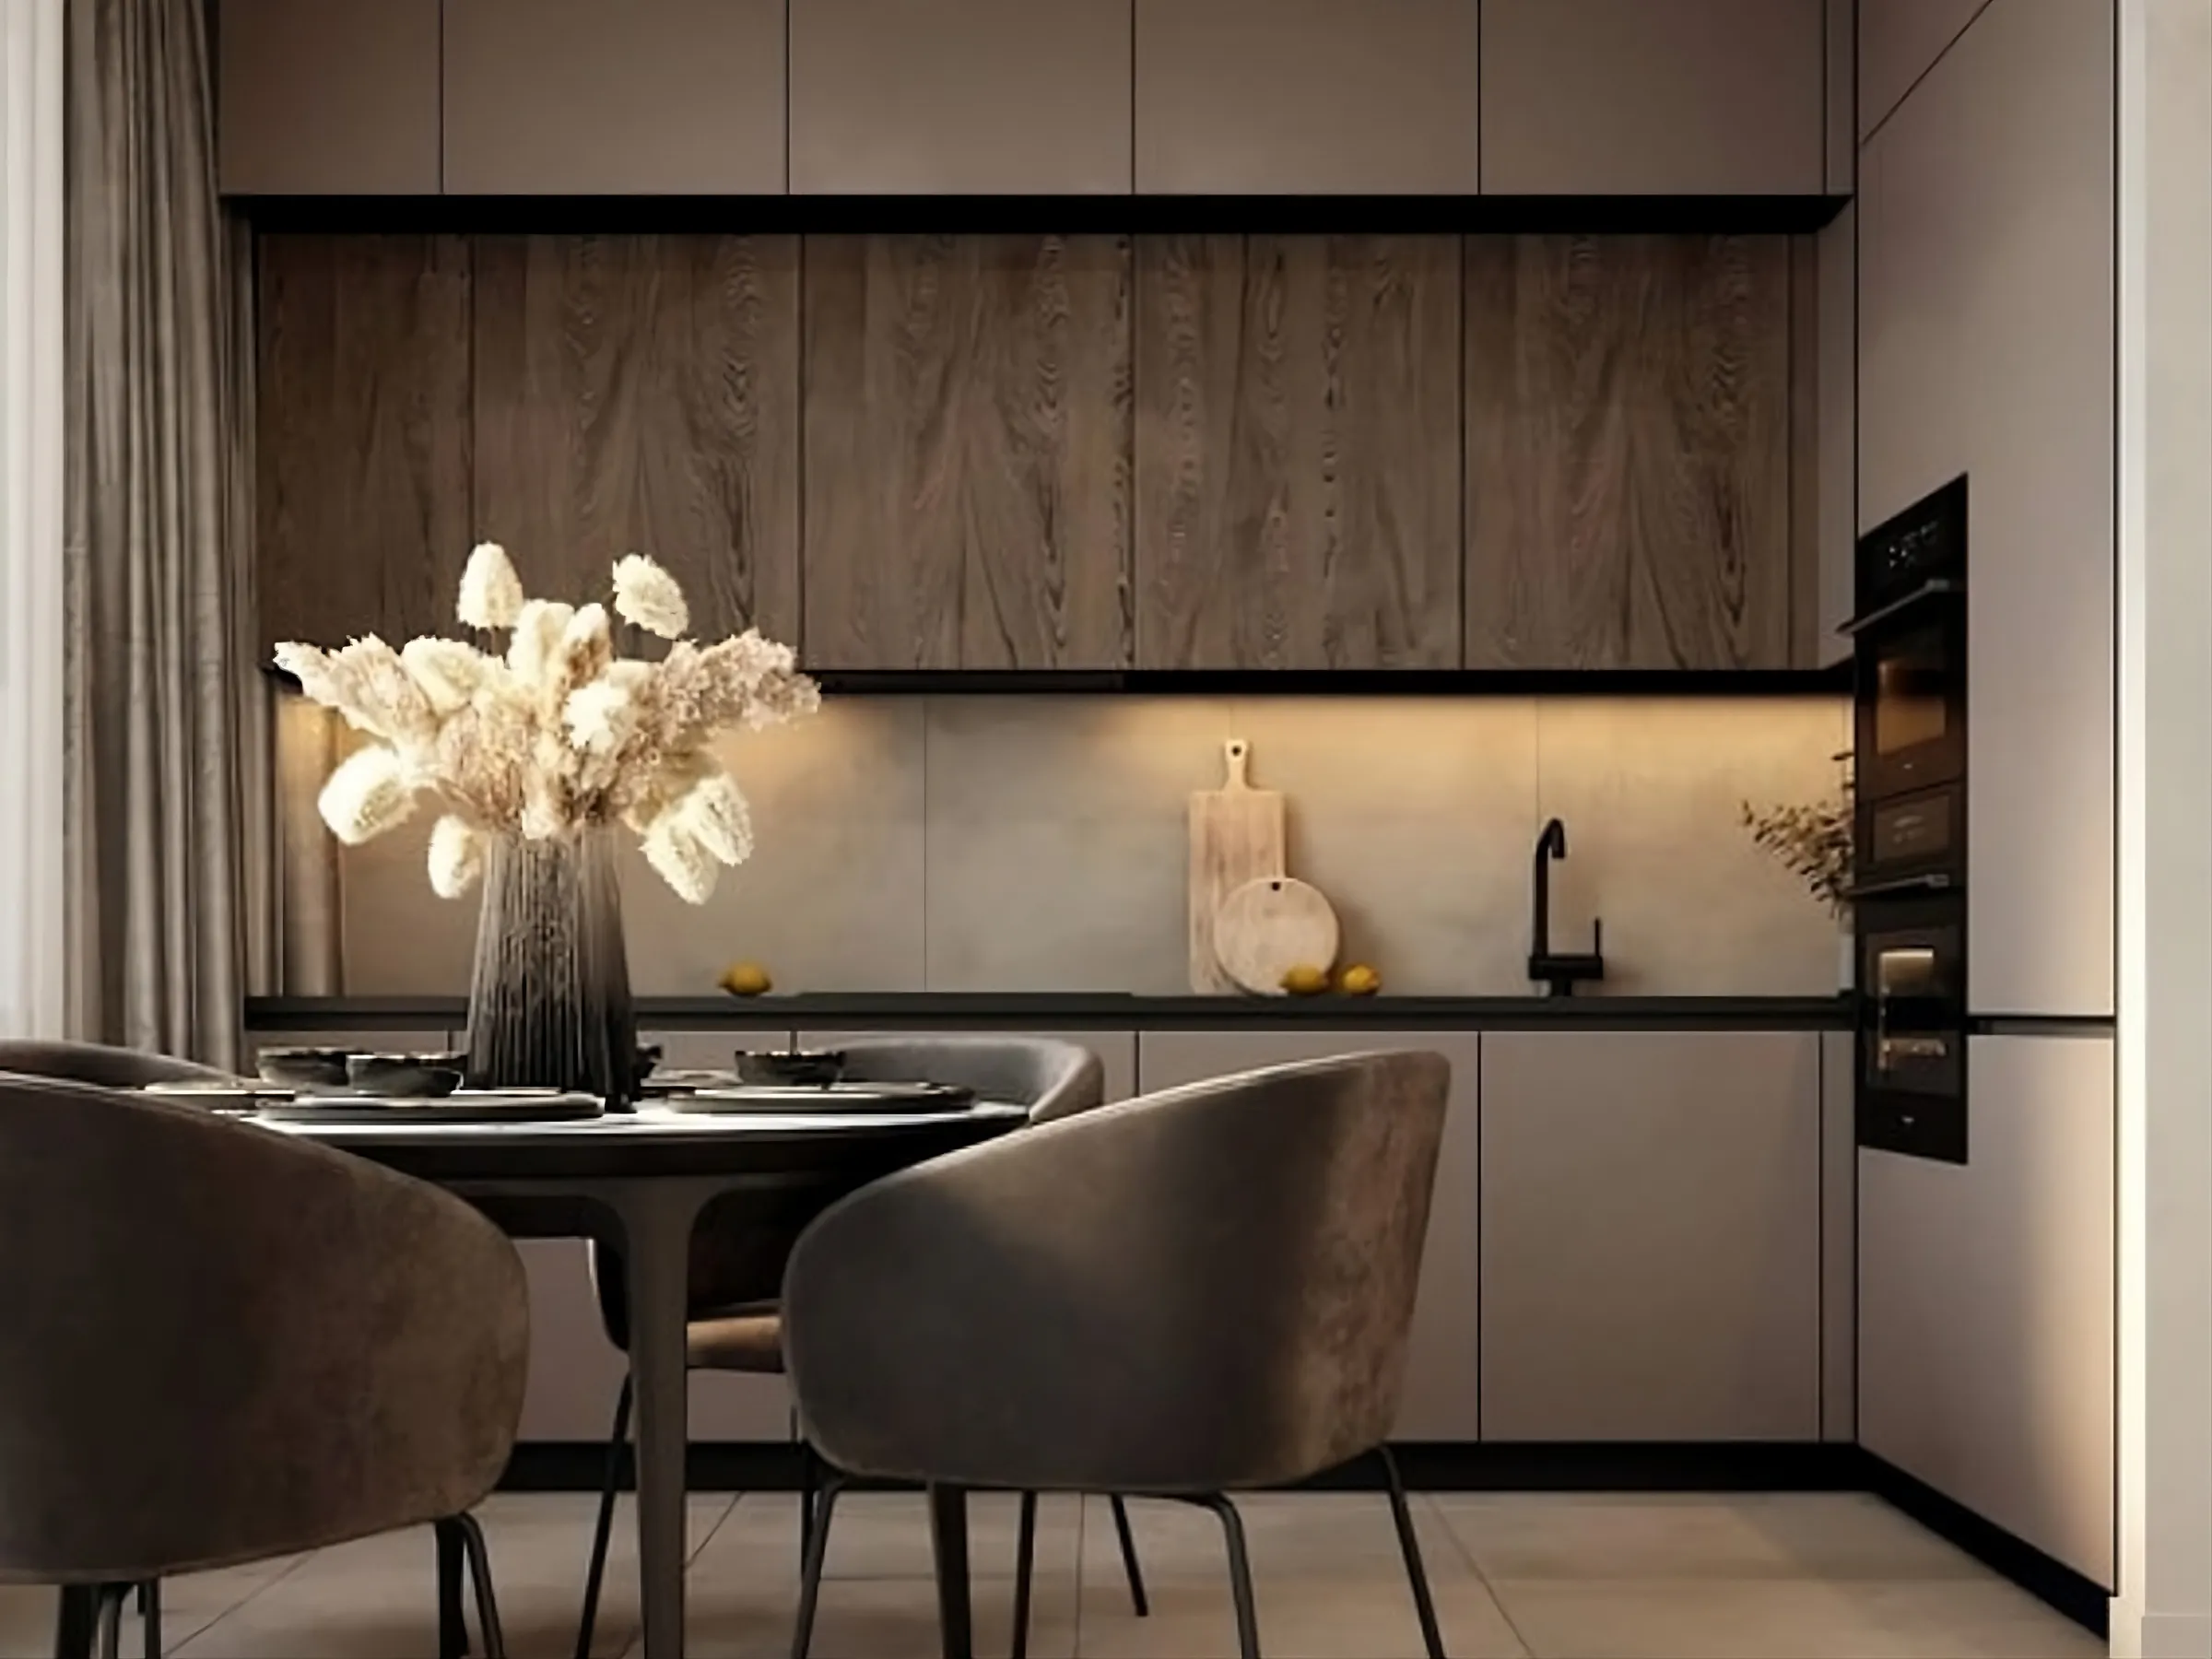 Vì sao bạn nên lựa chọn thiết kế nội thất nhà bếp - tủ bếp?